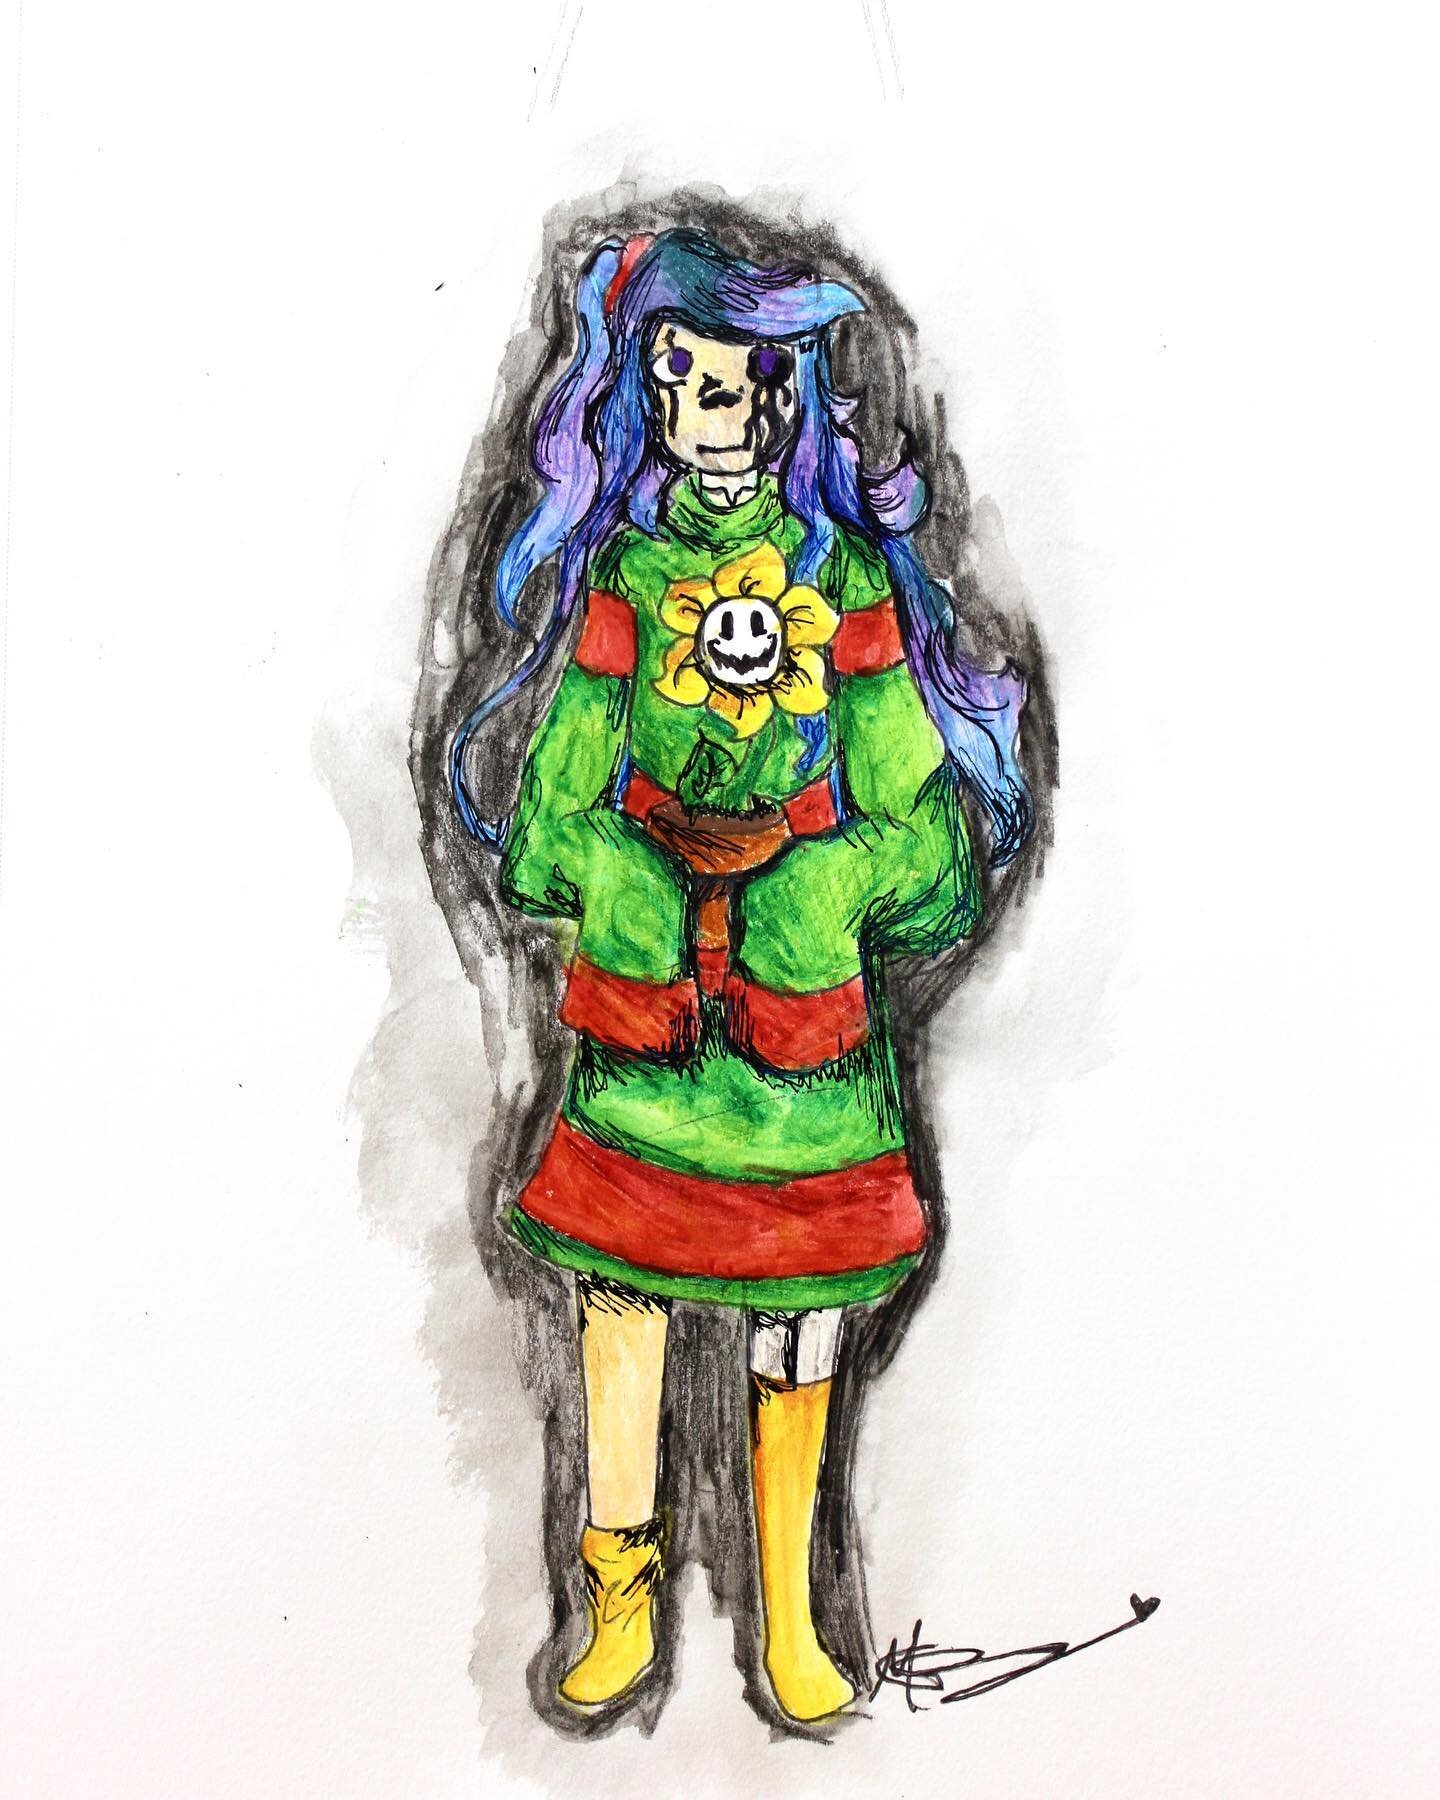 &ldquo;Best Friend&rdquo; Mixed Media
Artist: Mary Lambert, age 15 @moon_seeker88 @green_fire88
.
.
.
#mixedmedia #prismacolor #prismacolordrawing #drawing #prismacolorpremier #instaart #art #artclass #artstudent #utahart #utahartist #sydneybowmanart